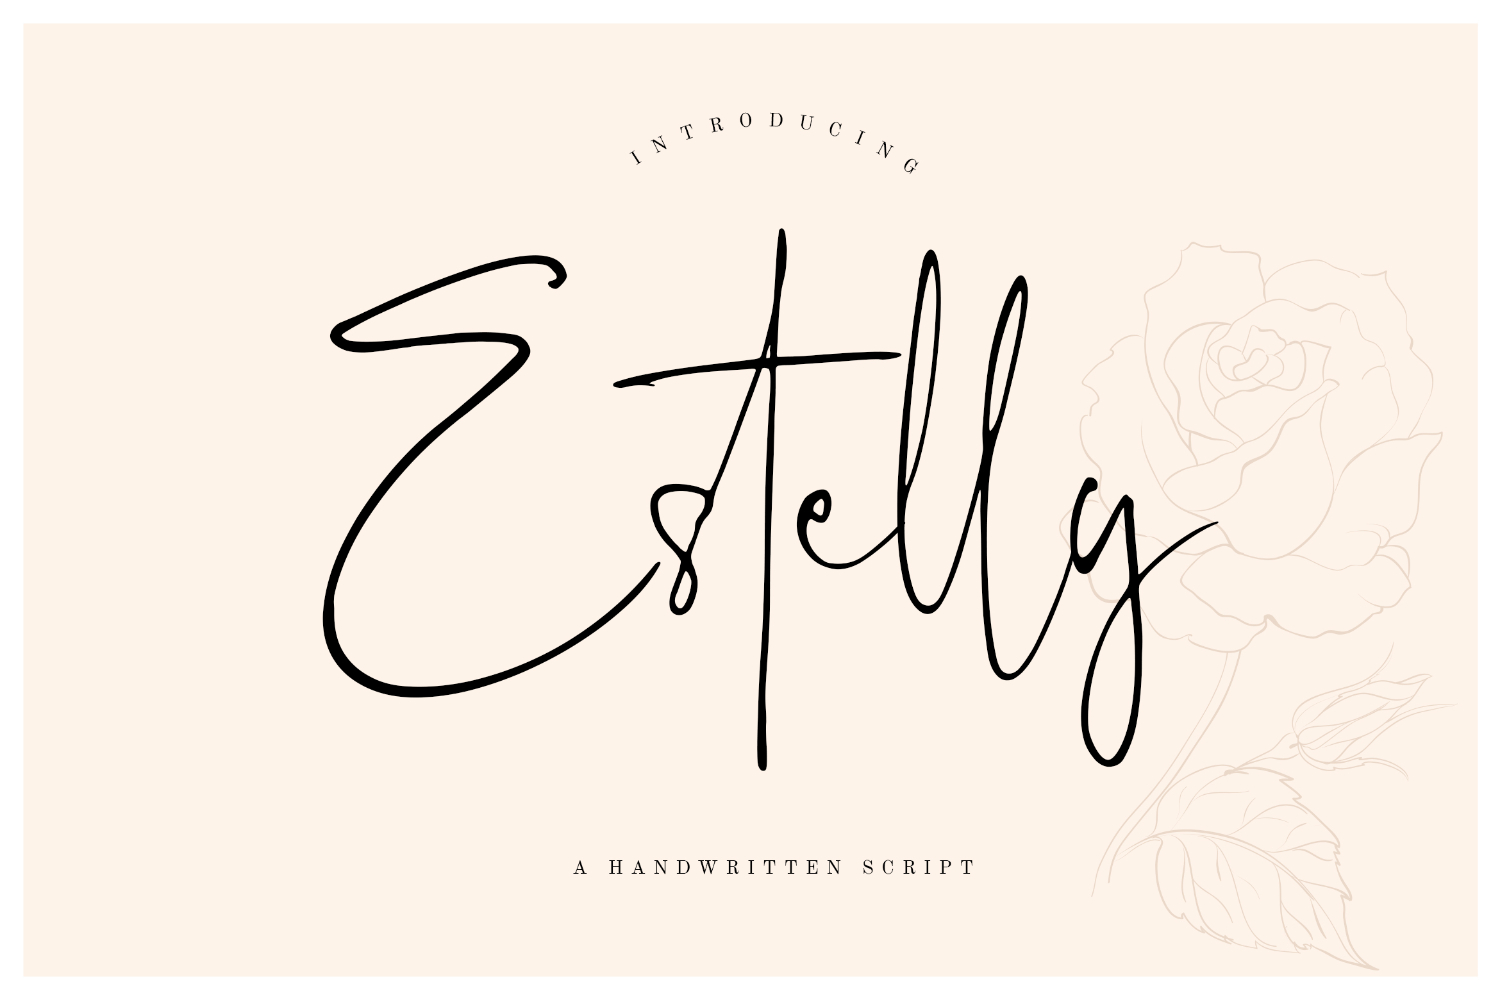 Estelly Stylish Signature Font